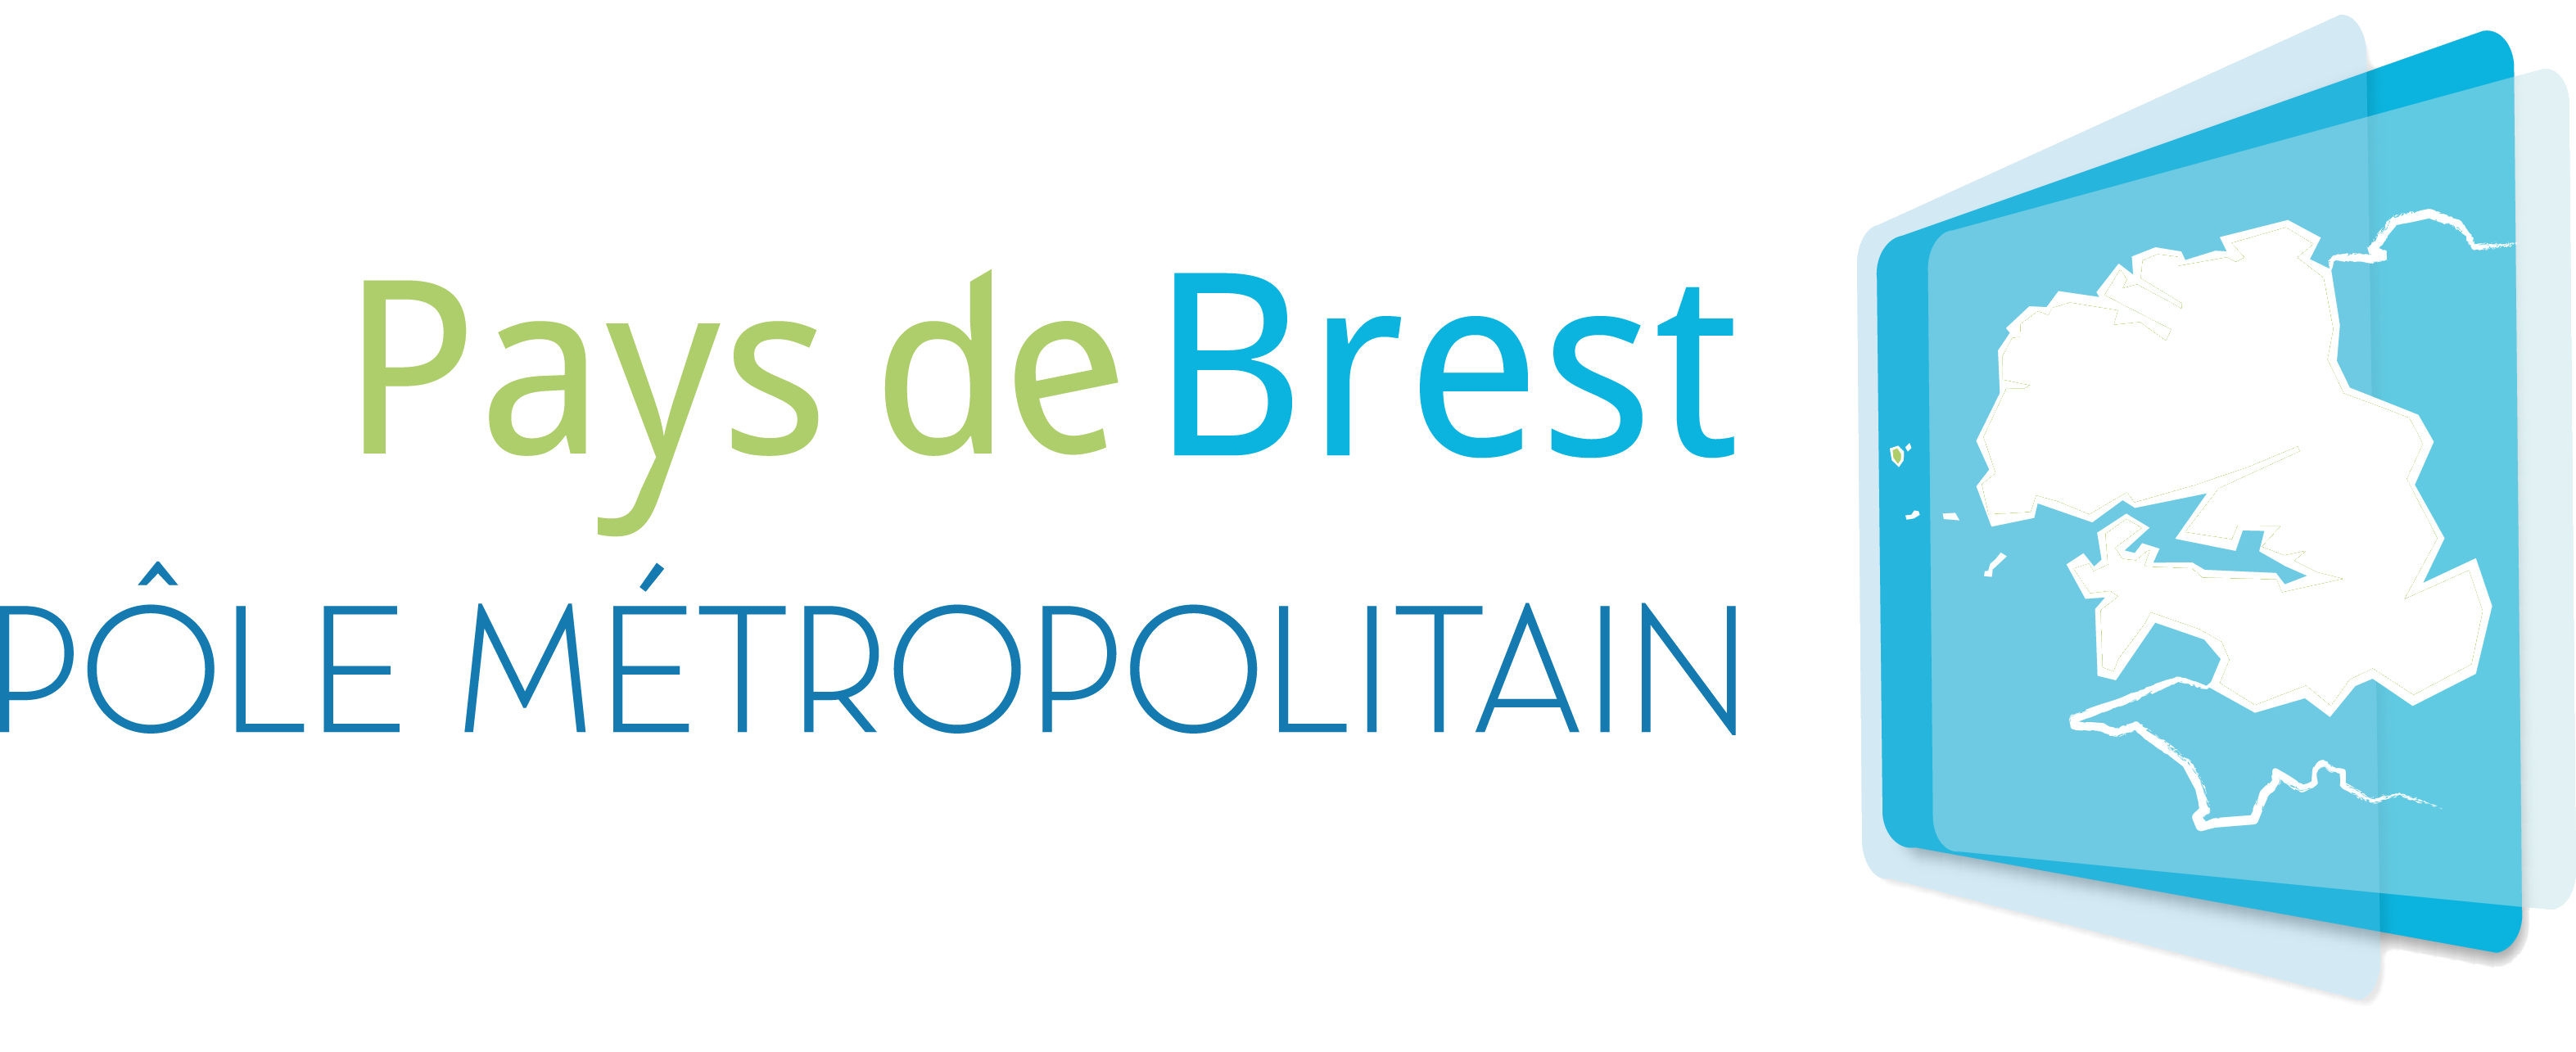 Pays de Brest